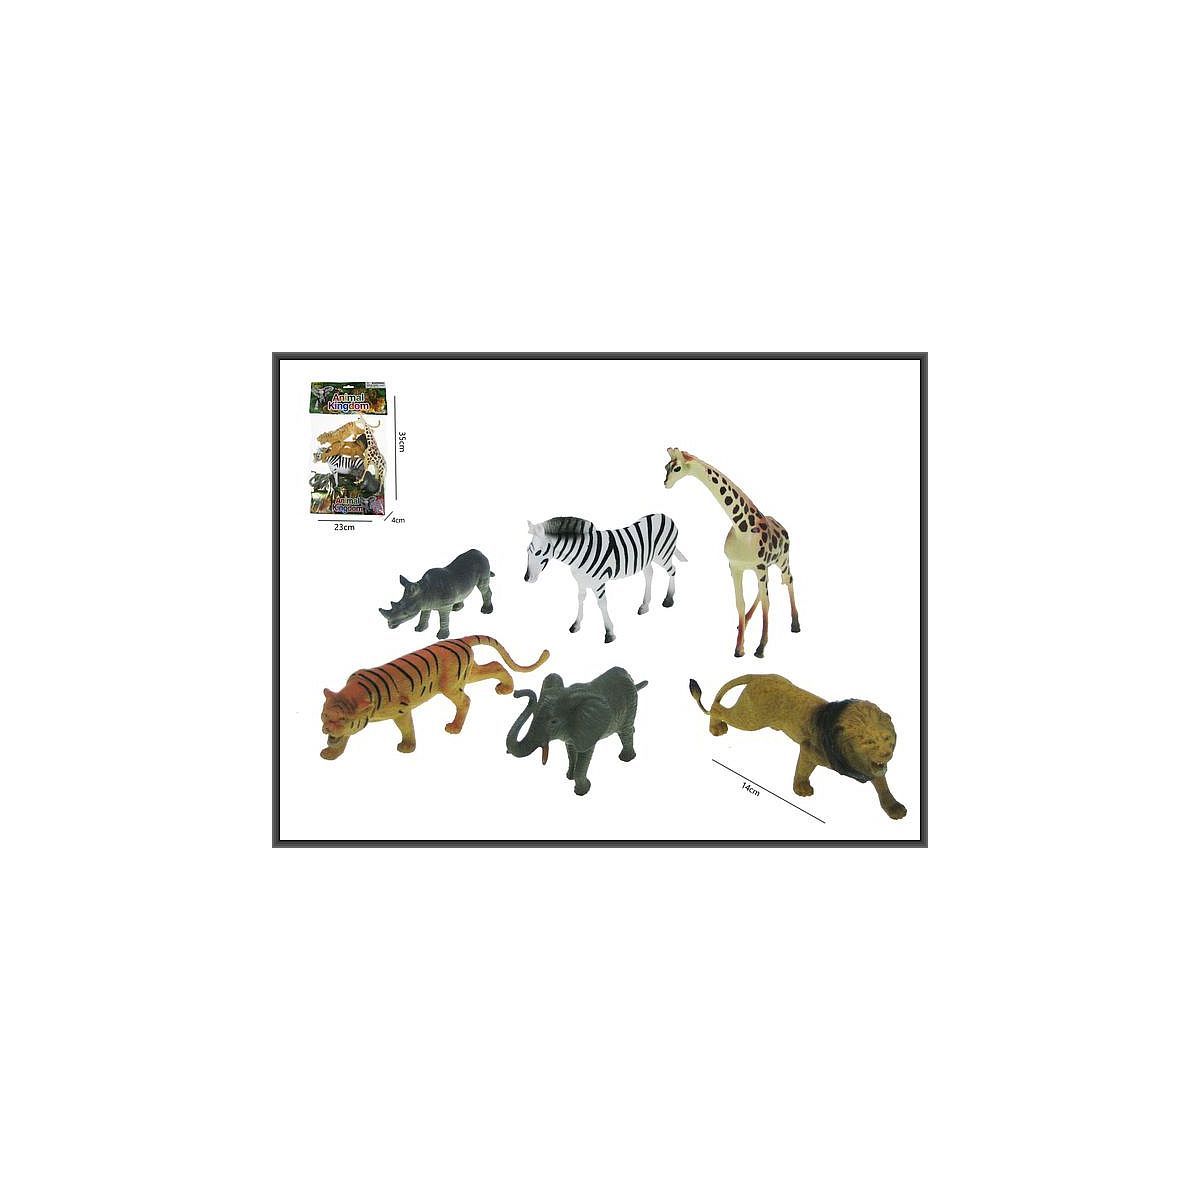 Figurka Hipo figurki Zwierzak zwierzęta dzikie (HSH006)